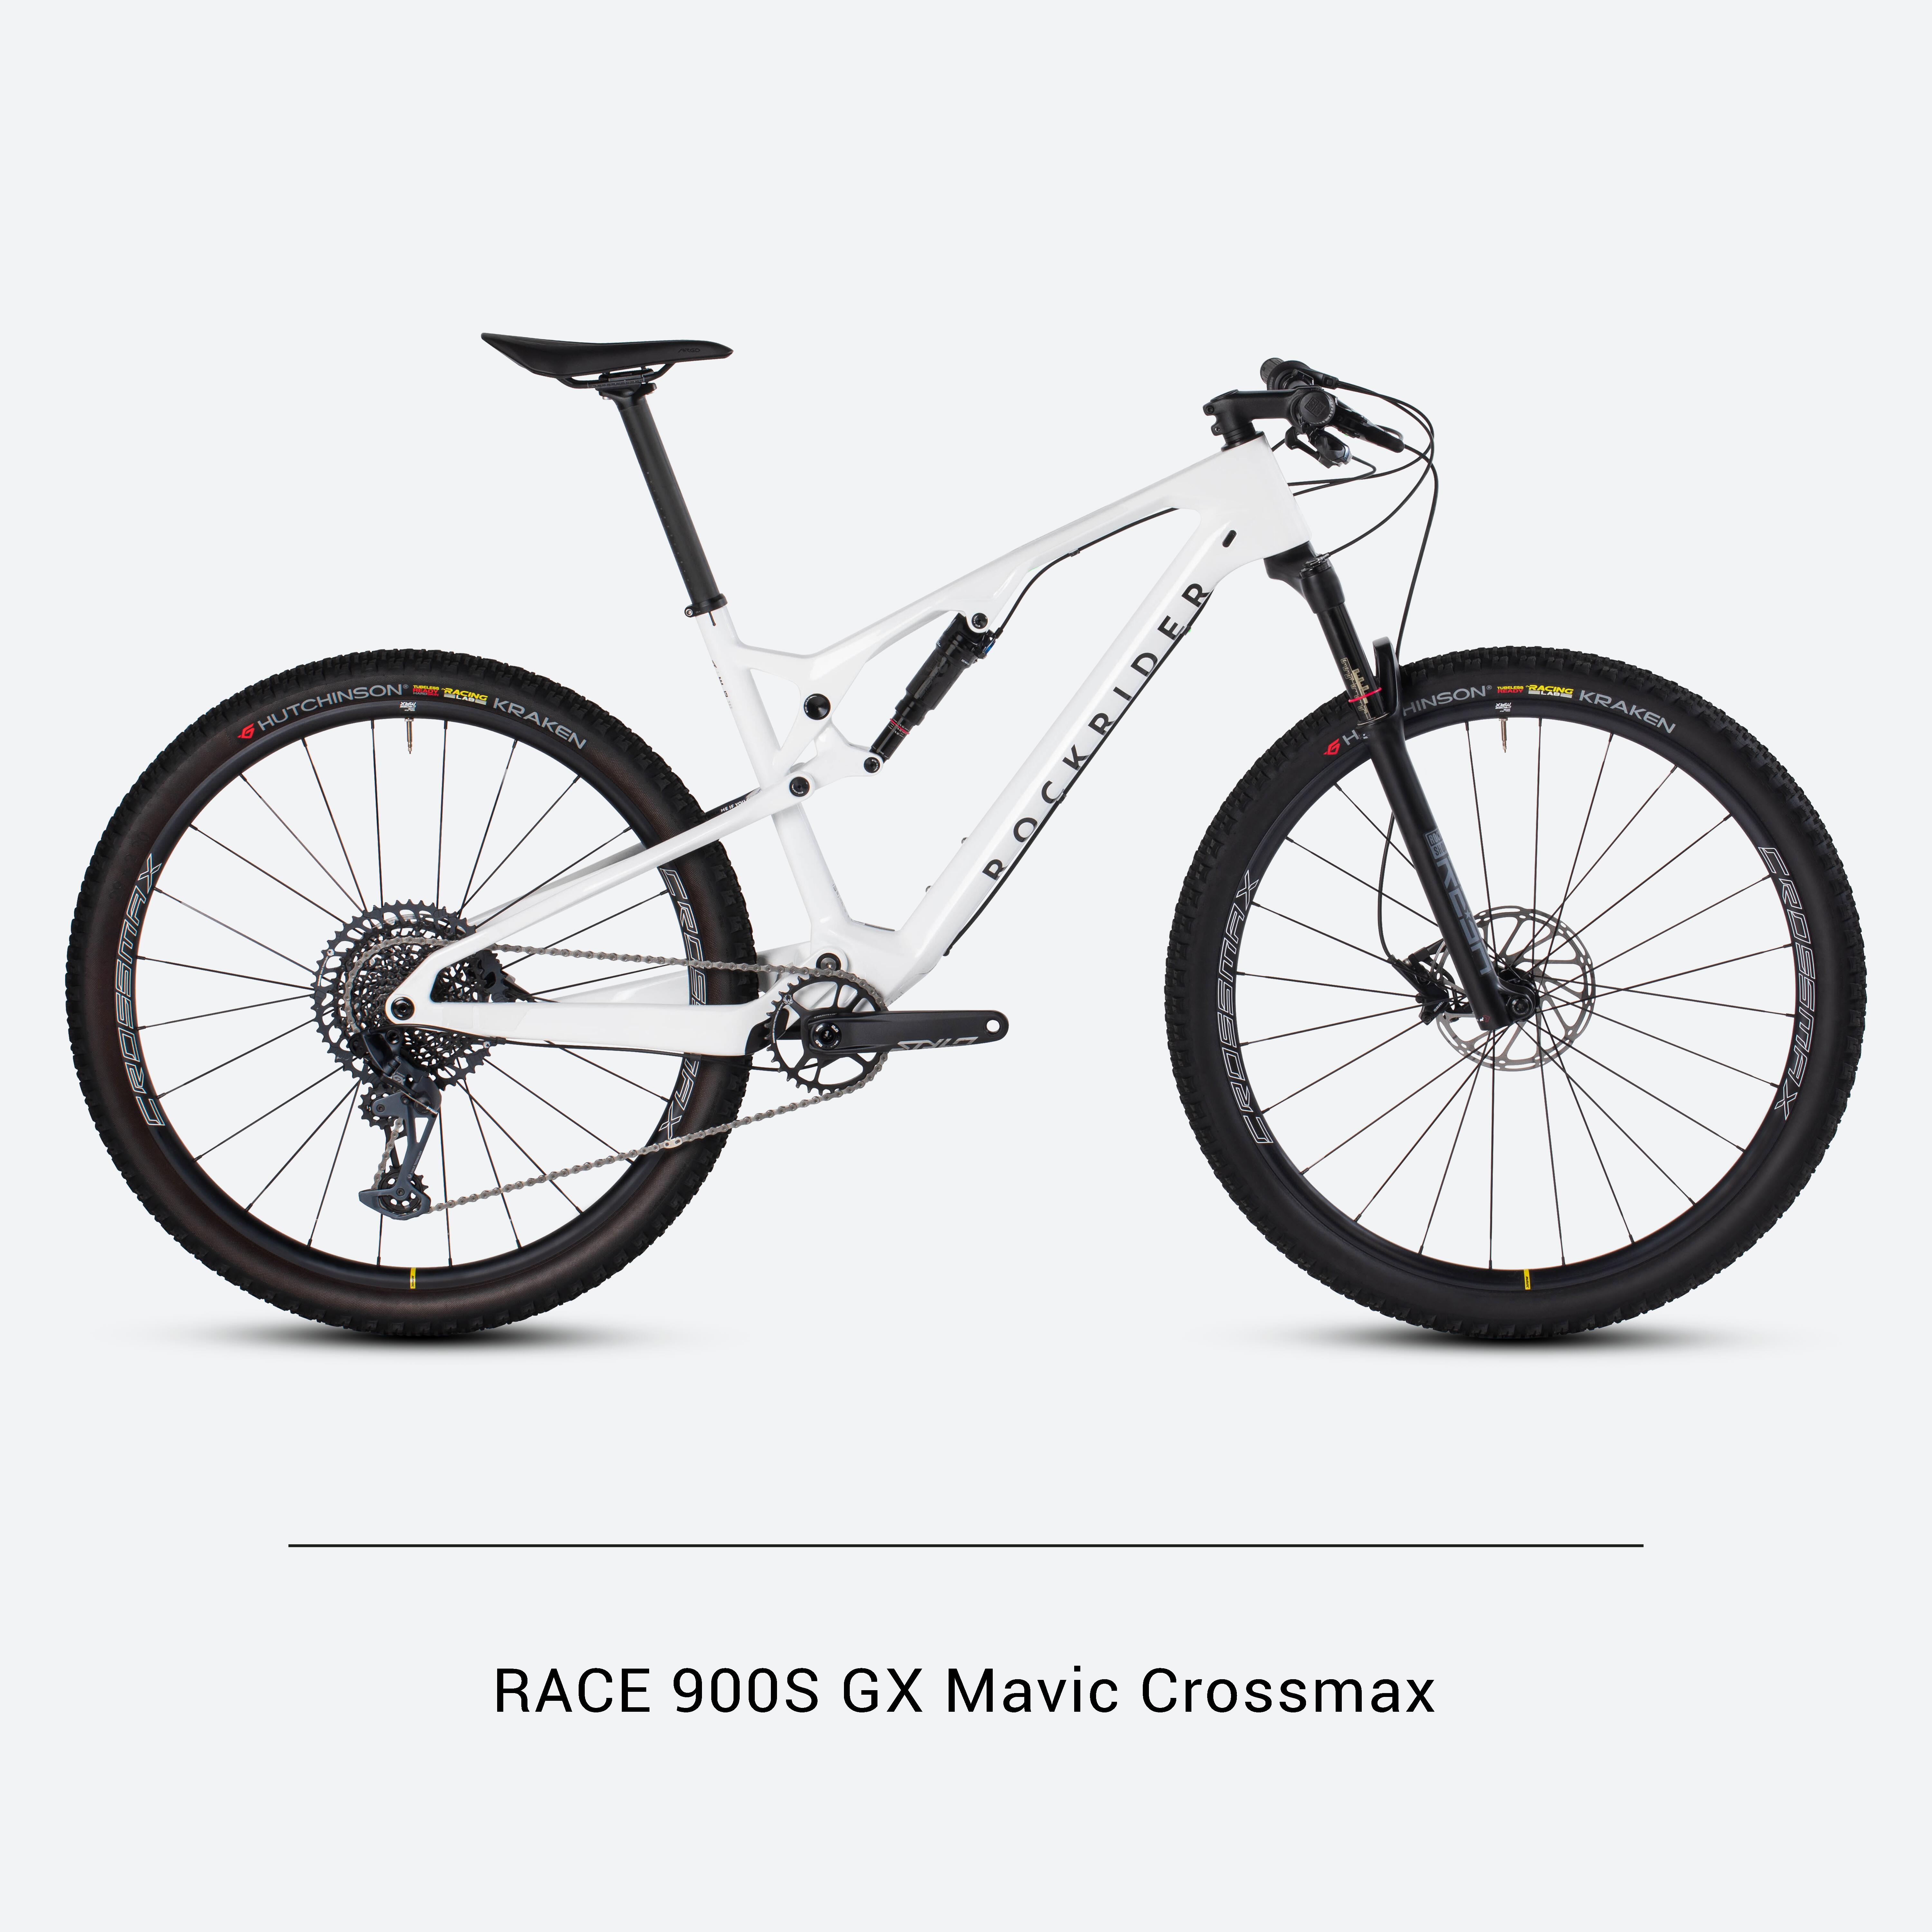 Bicicletă MTB cross country RACE 900S GX Eagle, roți Mavic Crossmax, cadru carbon